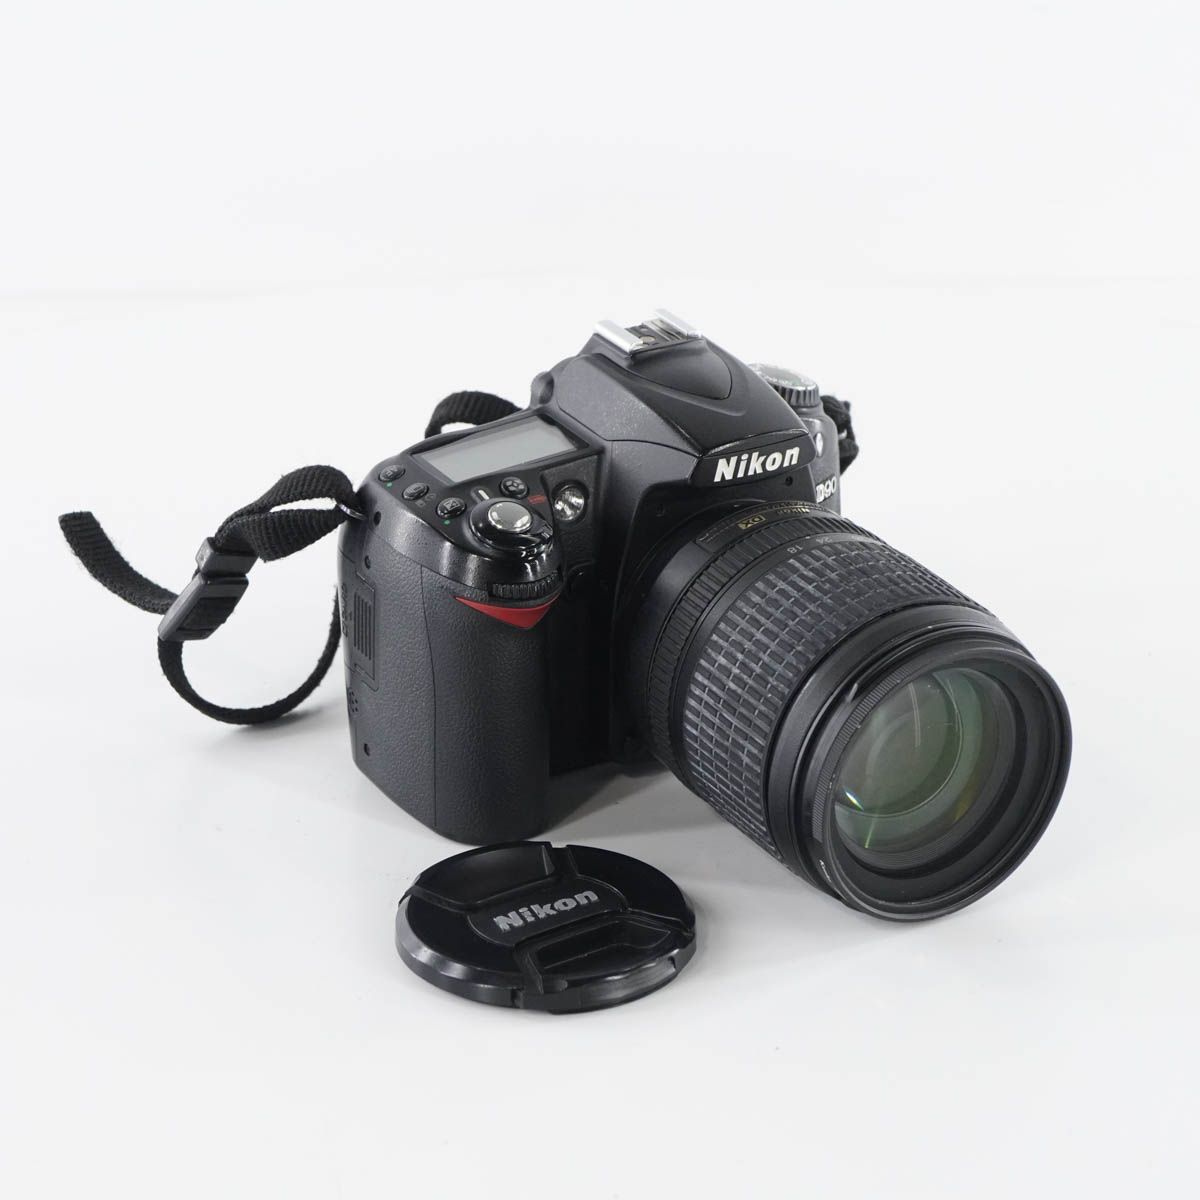 【中古】[JB]現状販売 NIKON D90 デジタル一眼レフカメラ レンズ付 18-105mm 1:3.5-5.6G ED ∞-0.45m/1.48ft Φ67 VR AF-S NIKKOR DX [05099-0224]